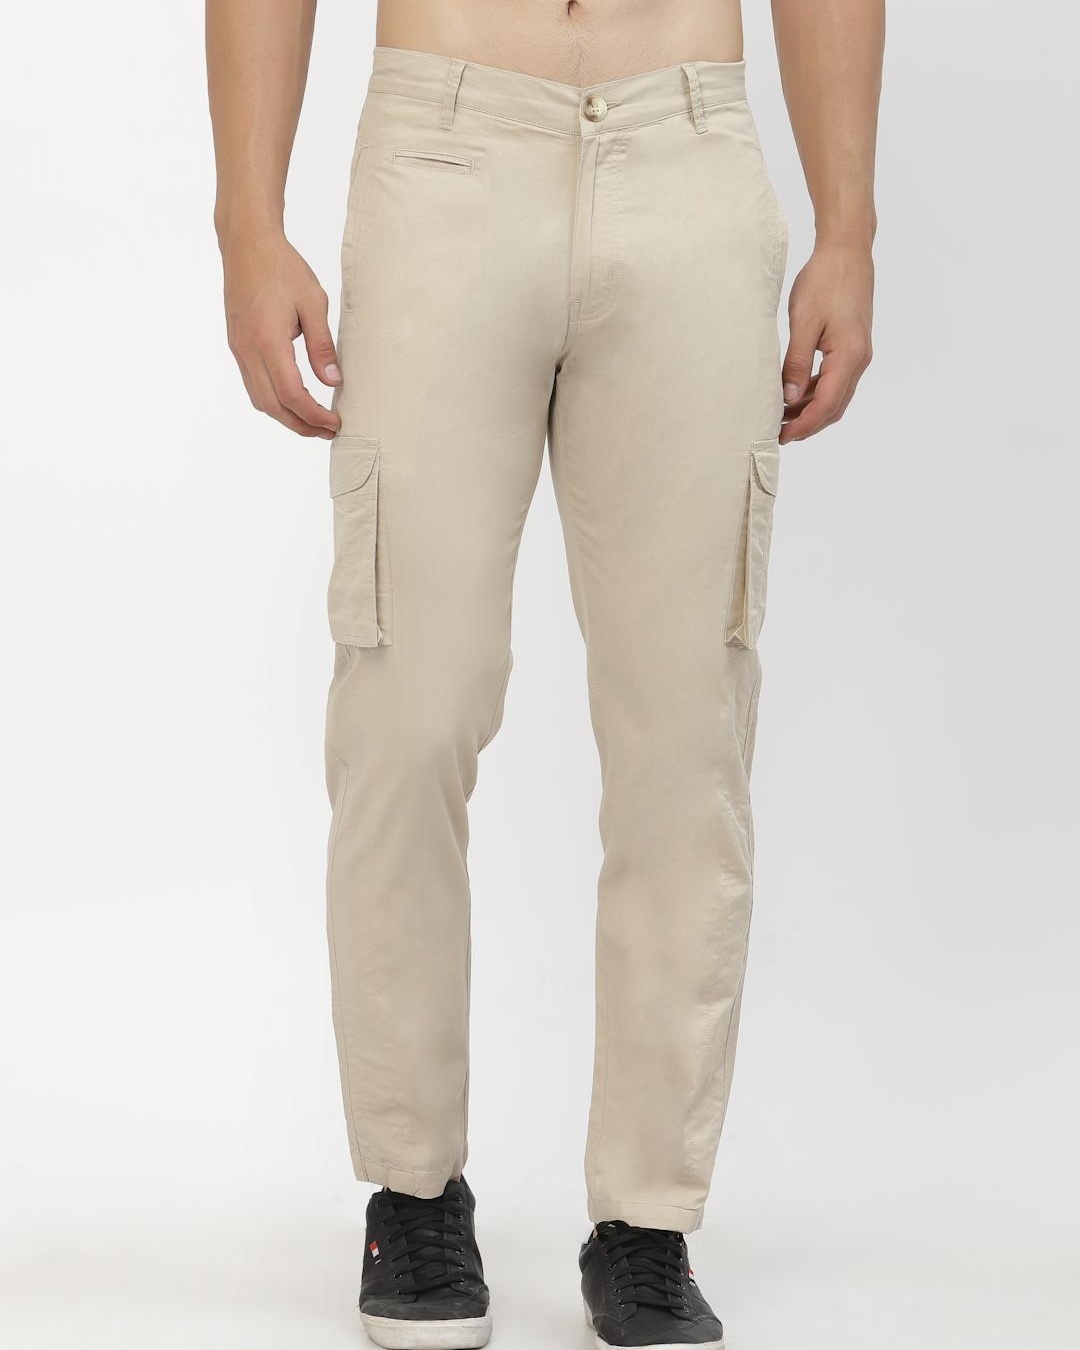 Buy Men's Beige Cargo Trousers for Men Beige Online at Bewakoof